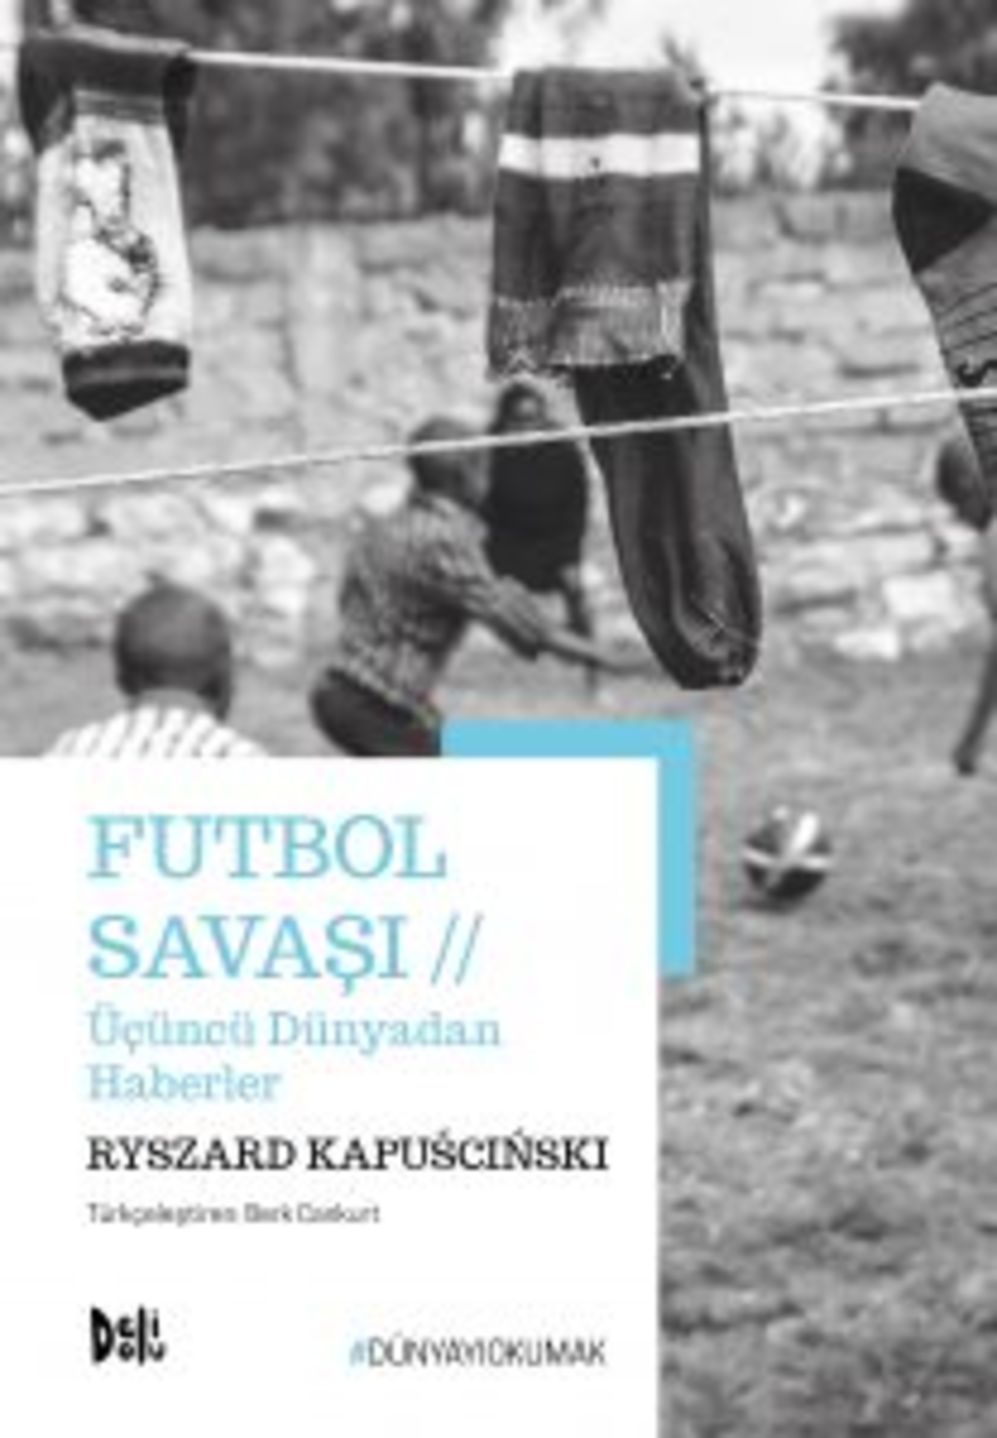  Futbol Savaşı (Ryszard Kapuscinski / Deli Dolu)